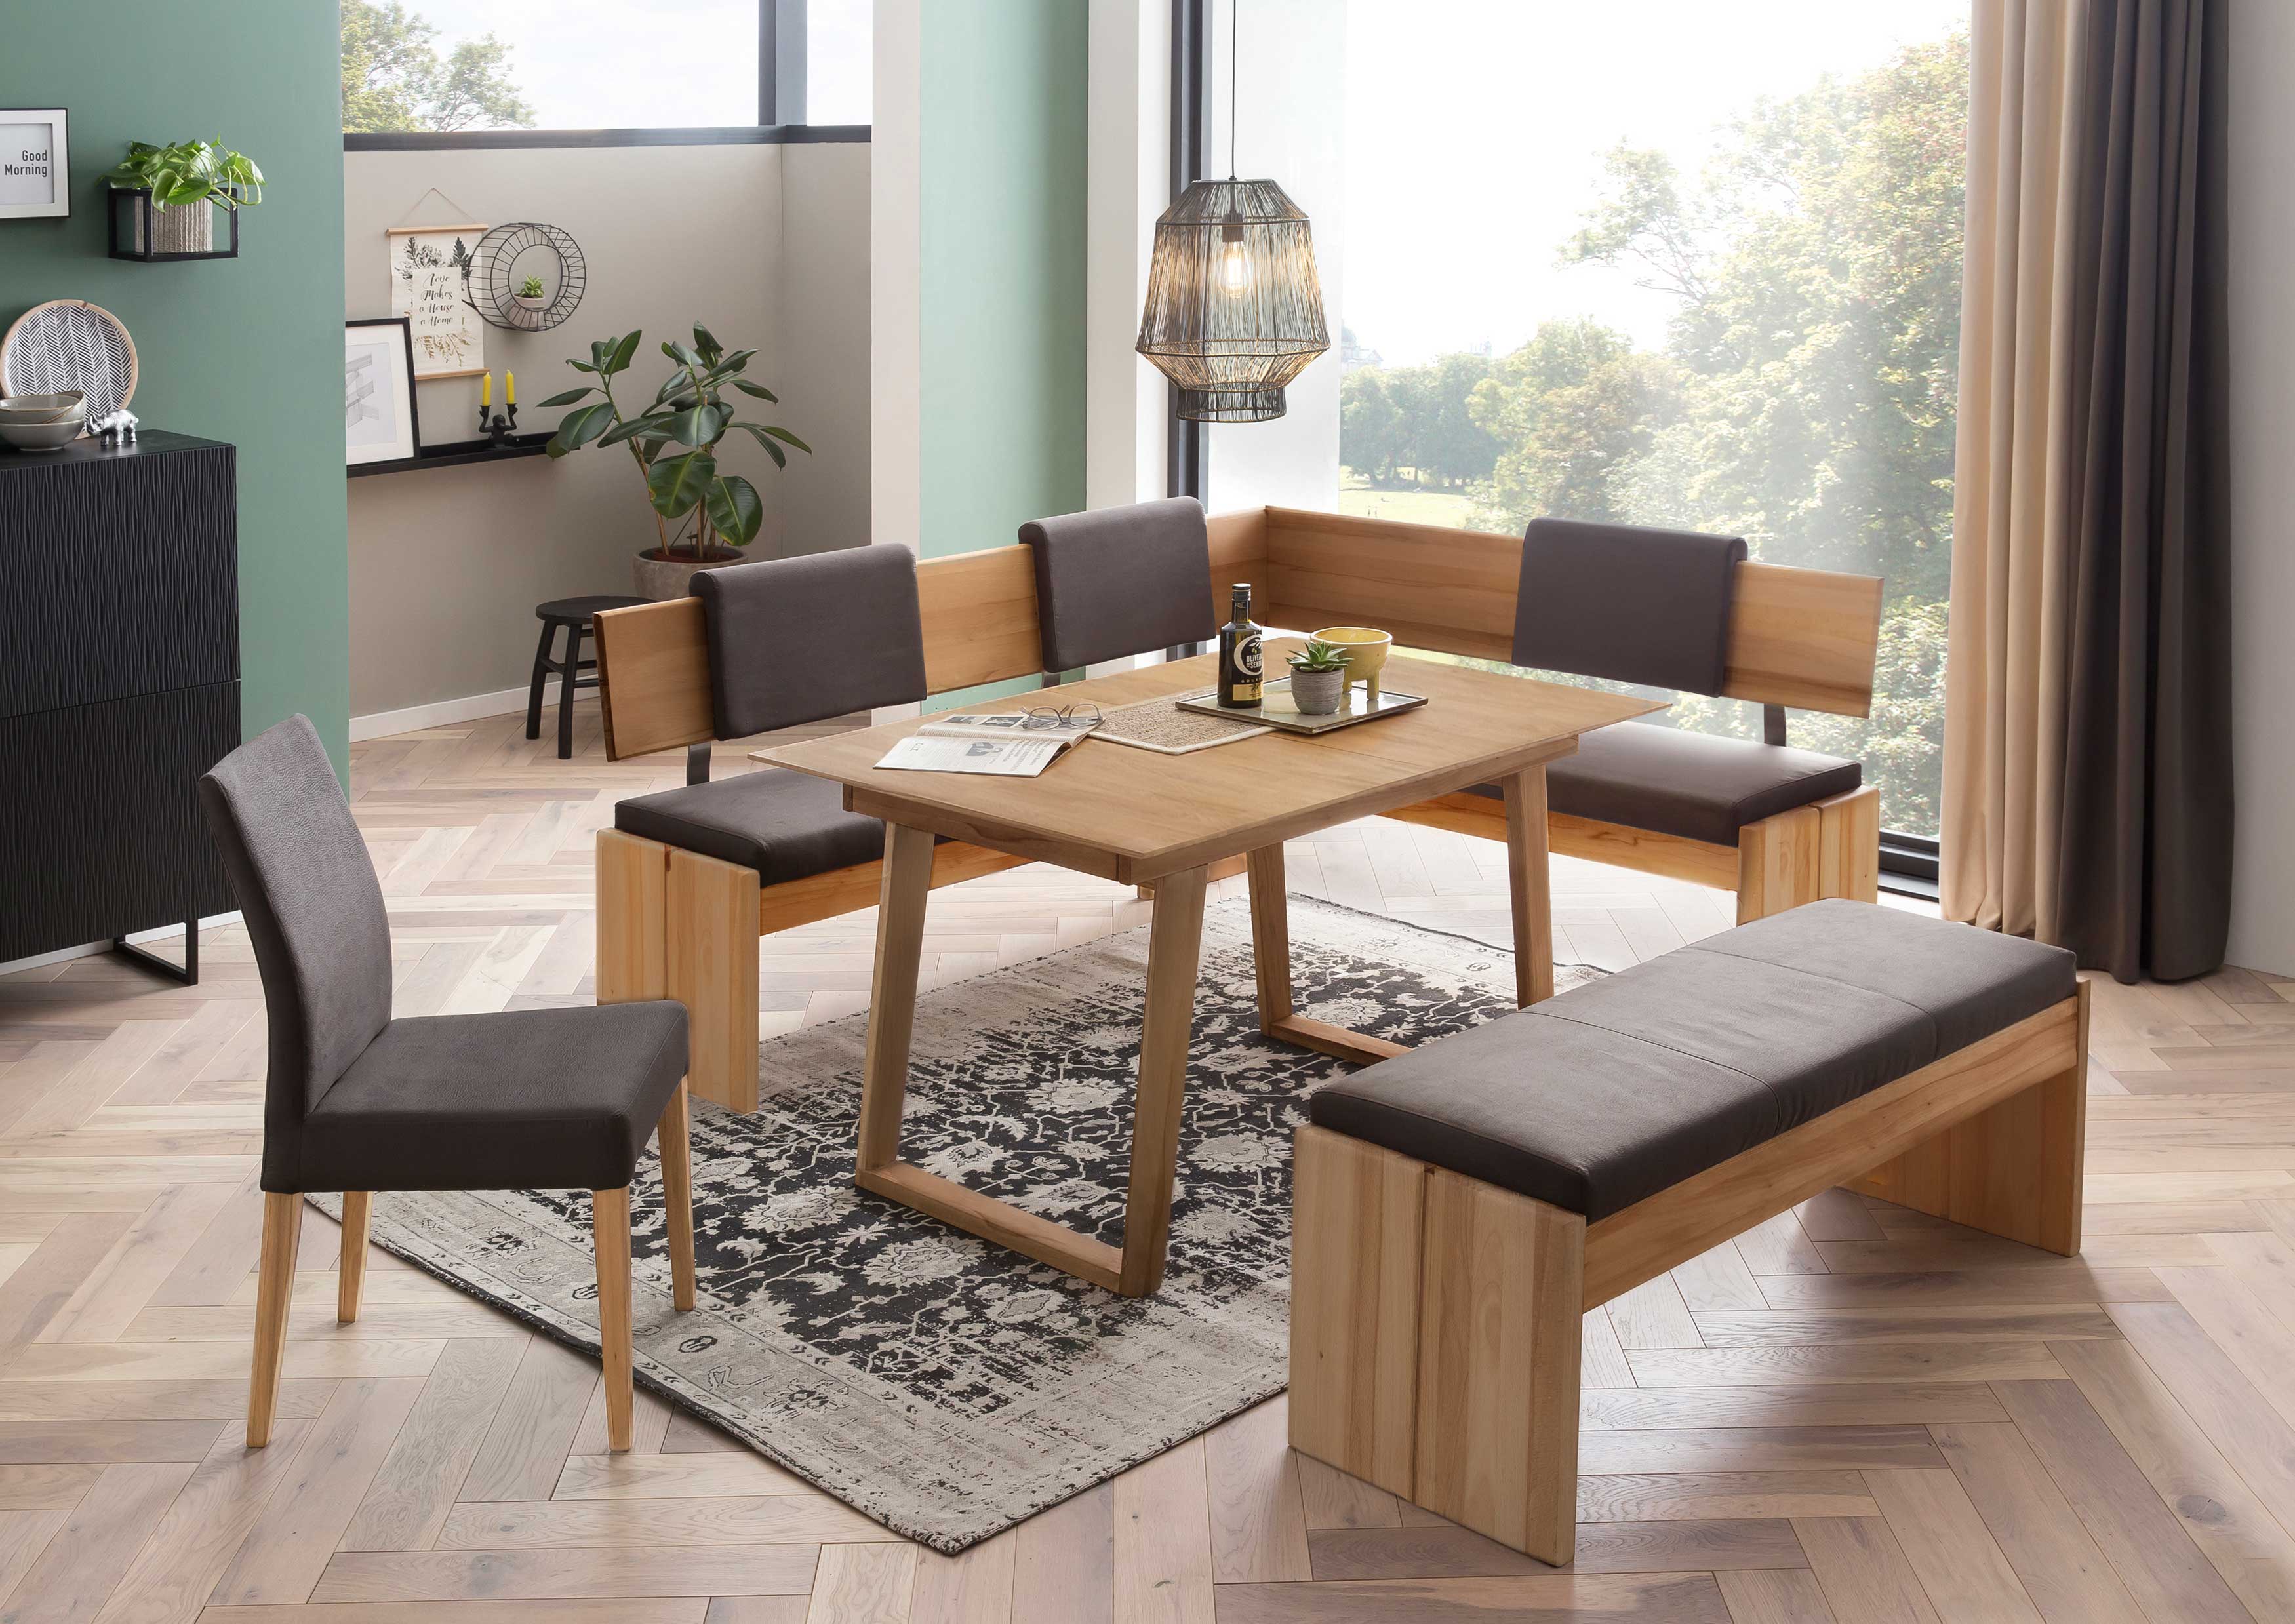 Standard Furniture Stockholm Eckbankgruppe massiv eiche